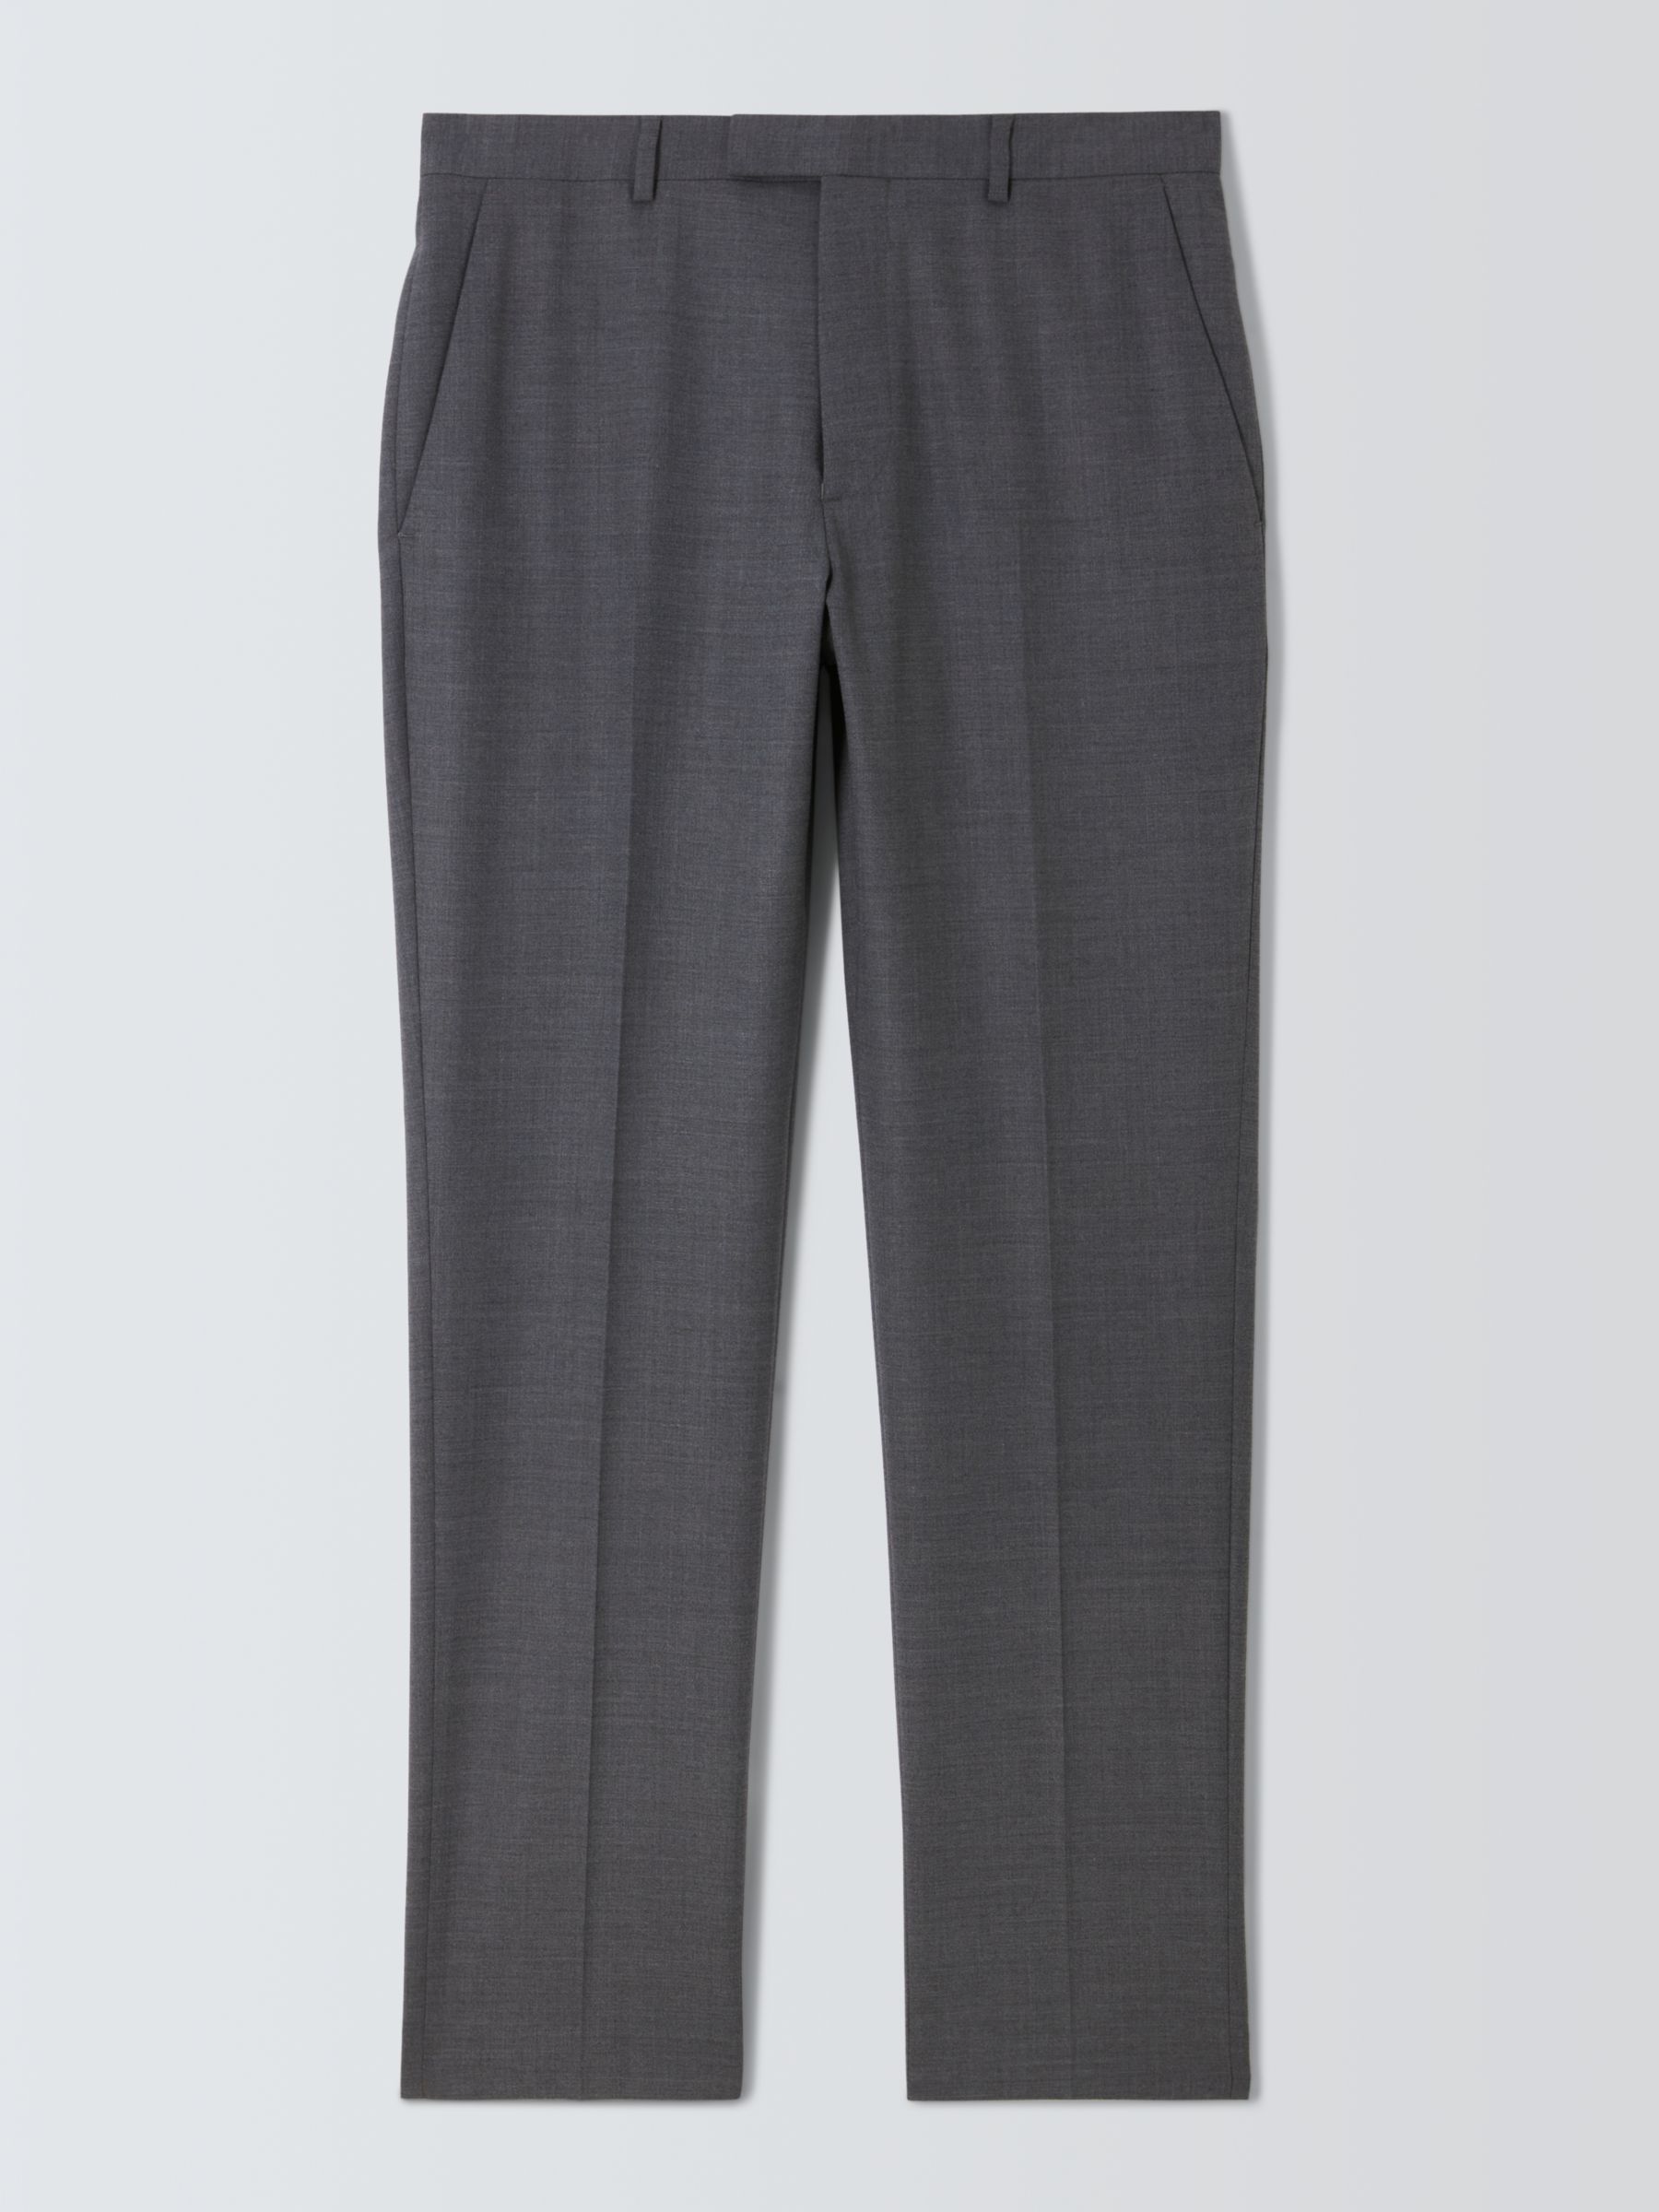 Kin Finn Slim Fit Suit Trousers, Mid Grey, 34L